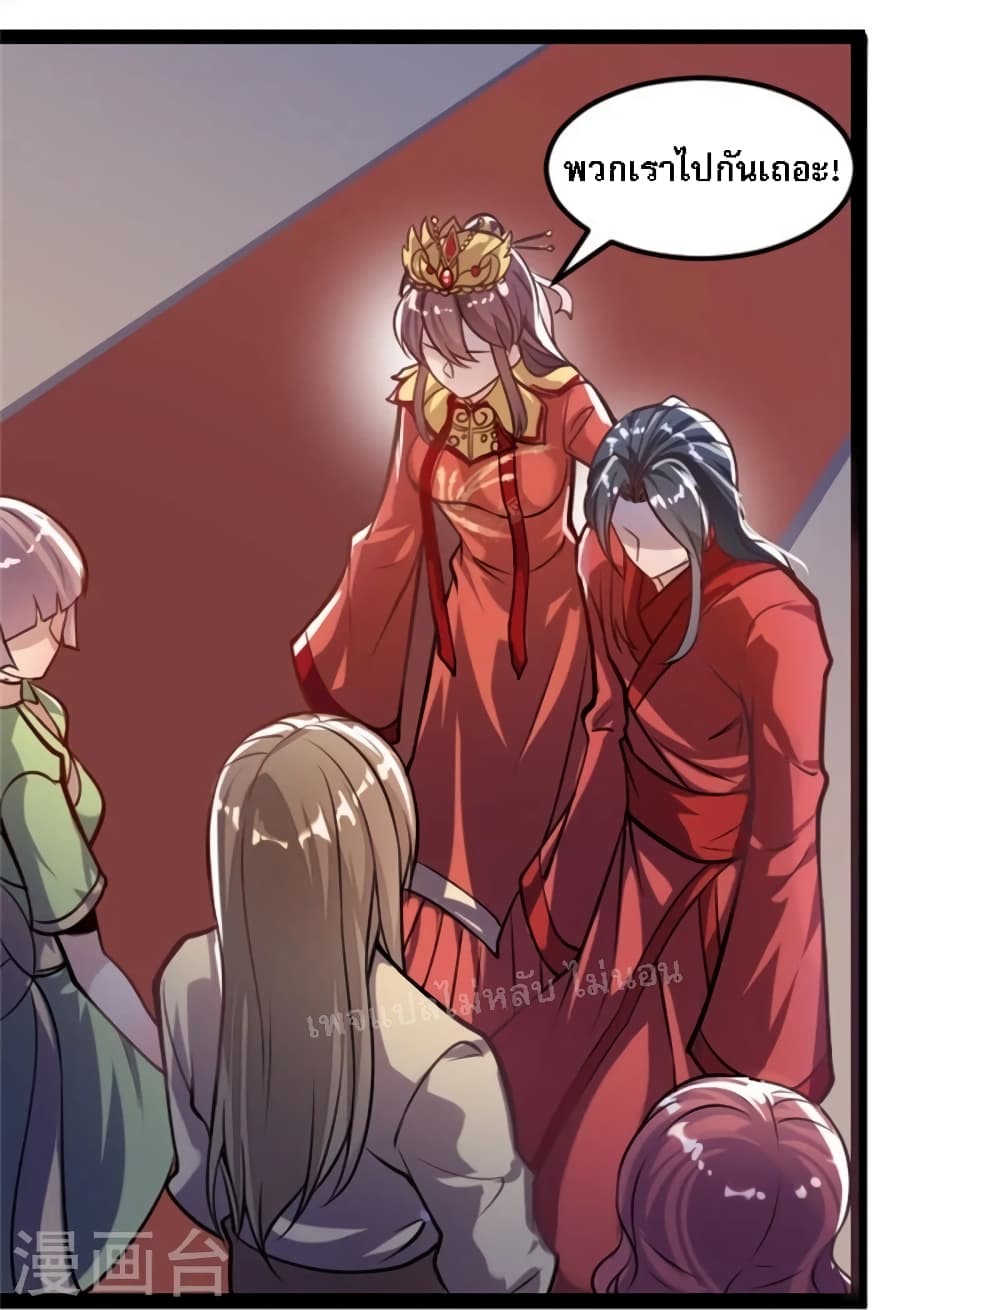 The Sword Immortal Emperor was reborn as a son-in-law 1-1